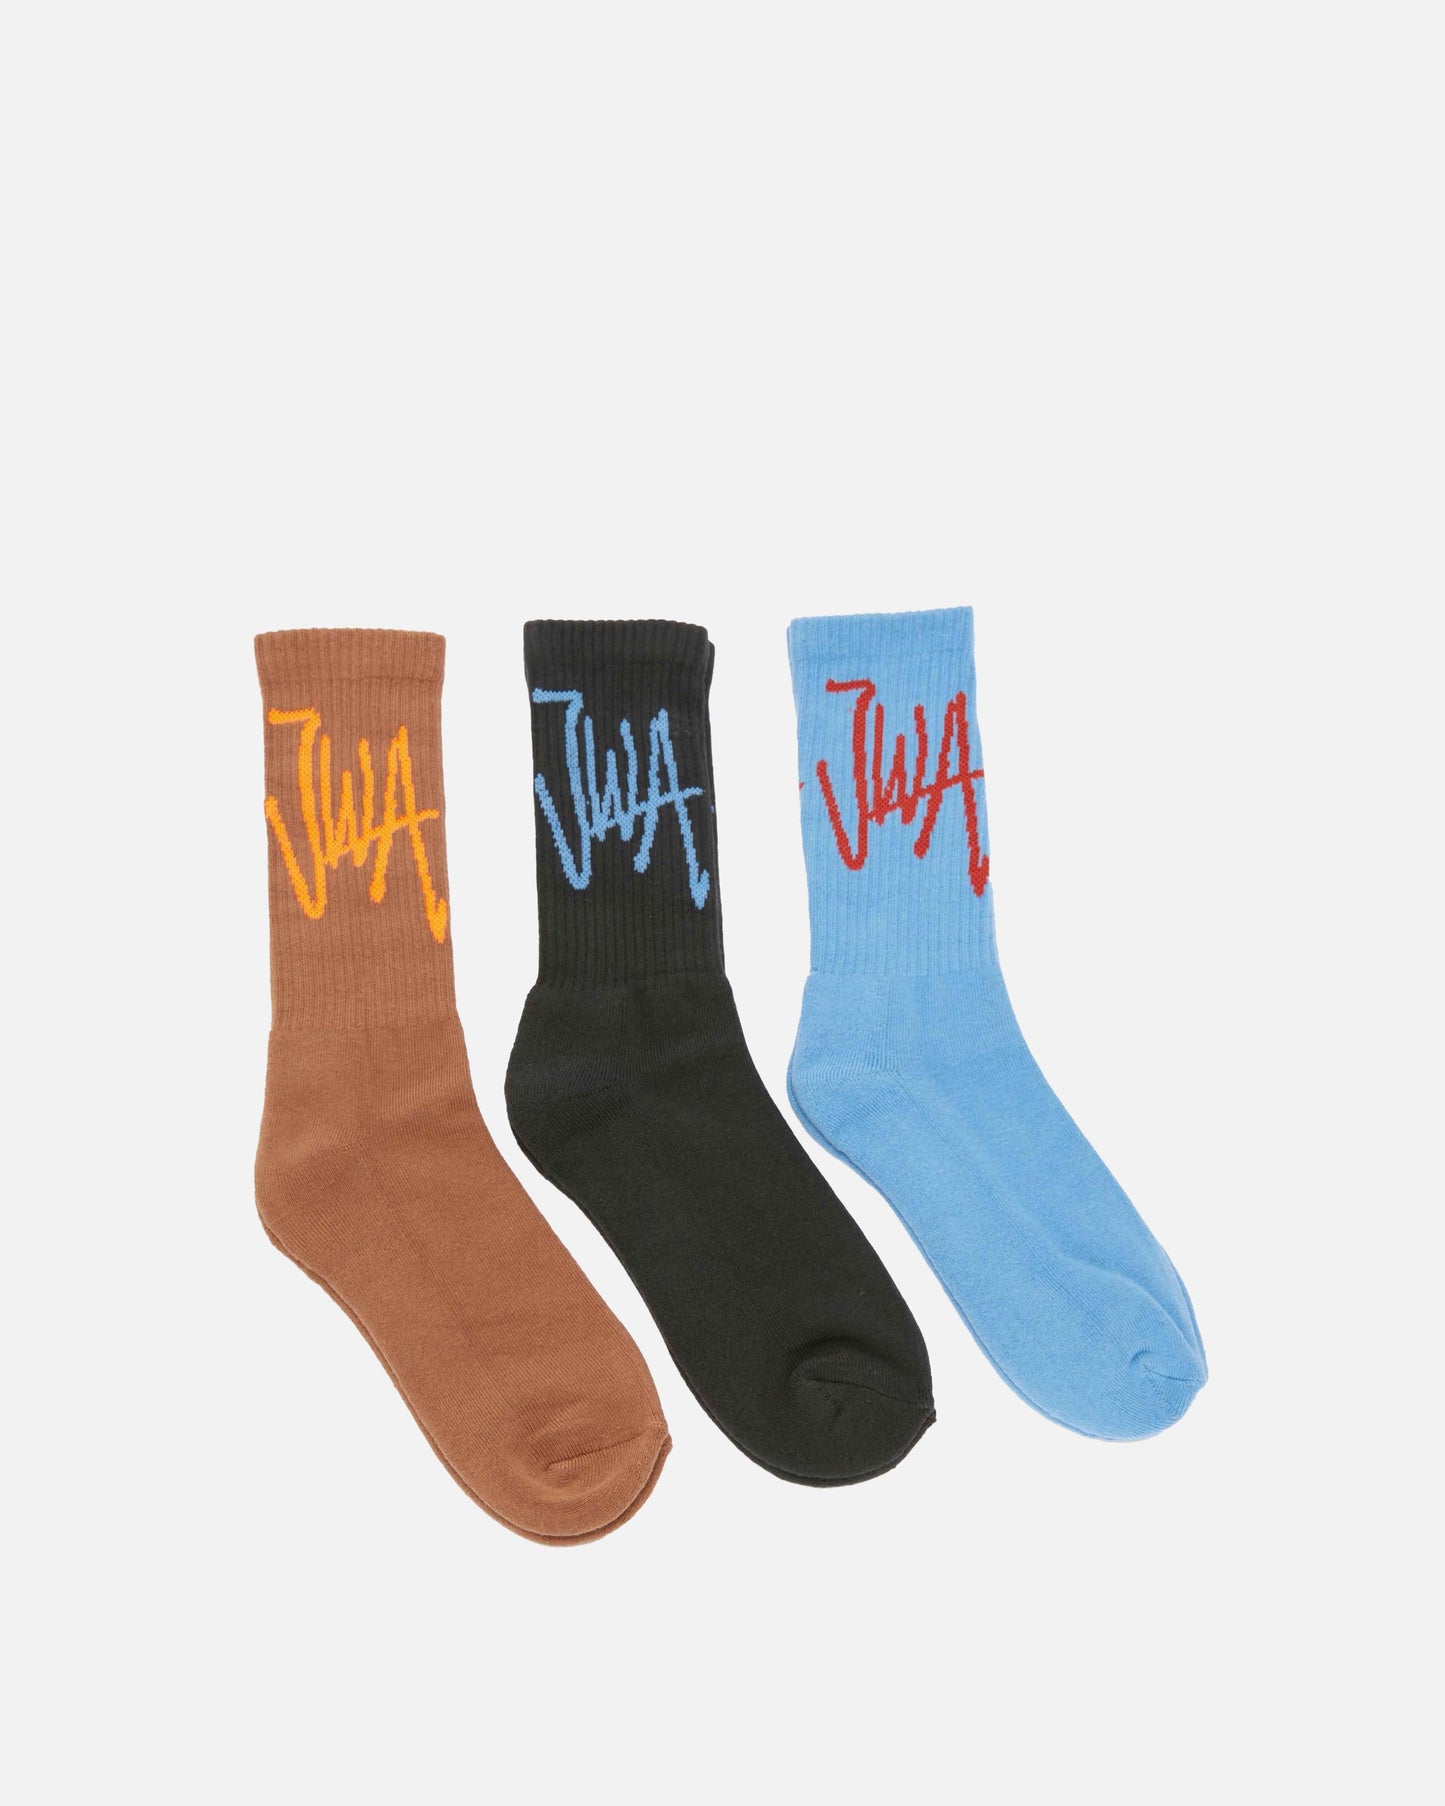 JW Anderson Men's Socks Hand Written JWA Logo Ankle Socks Bundle